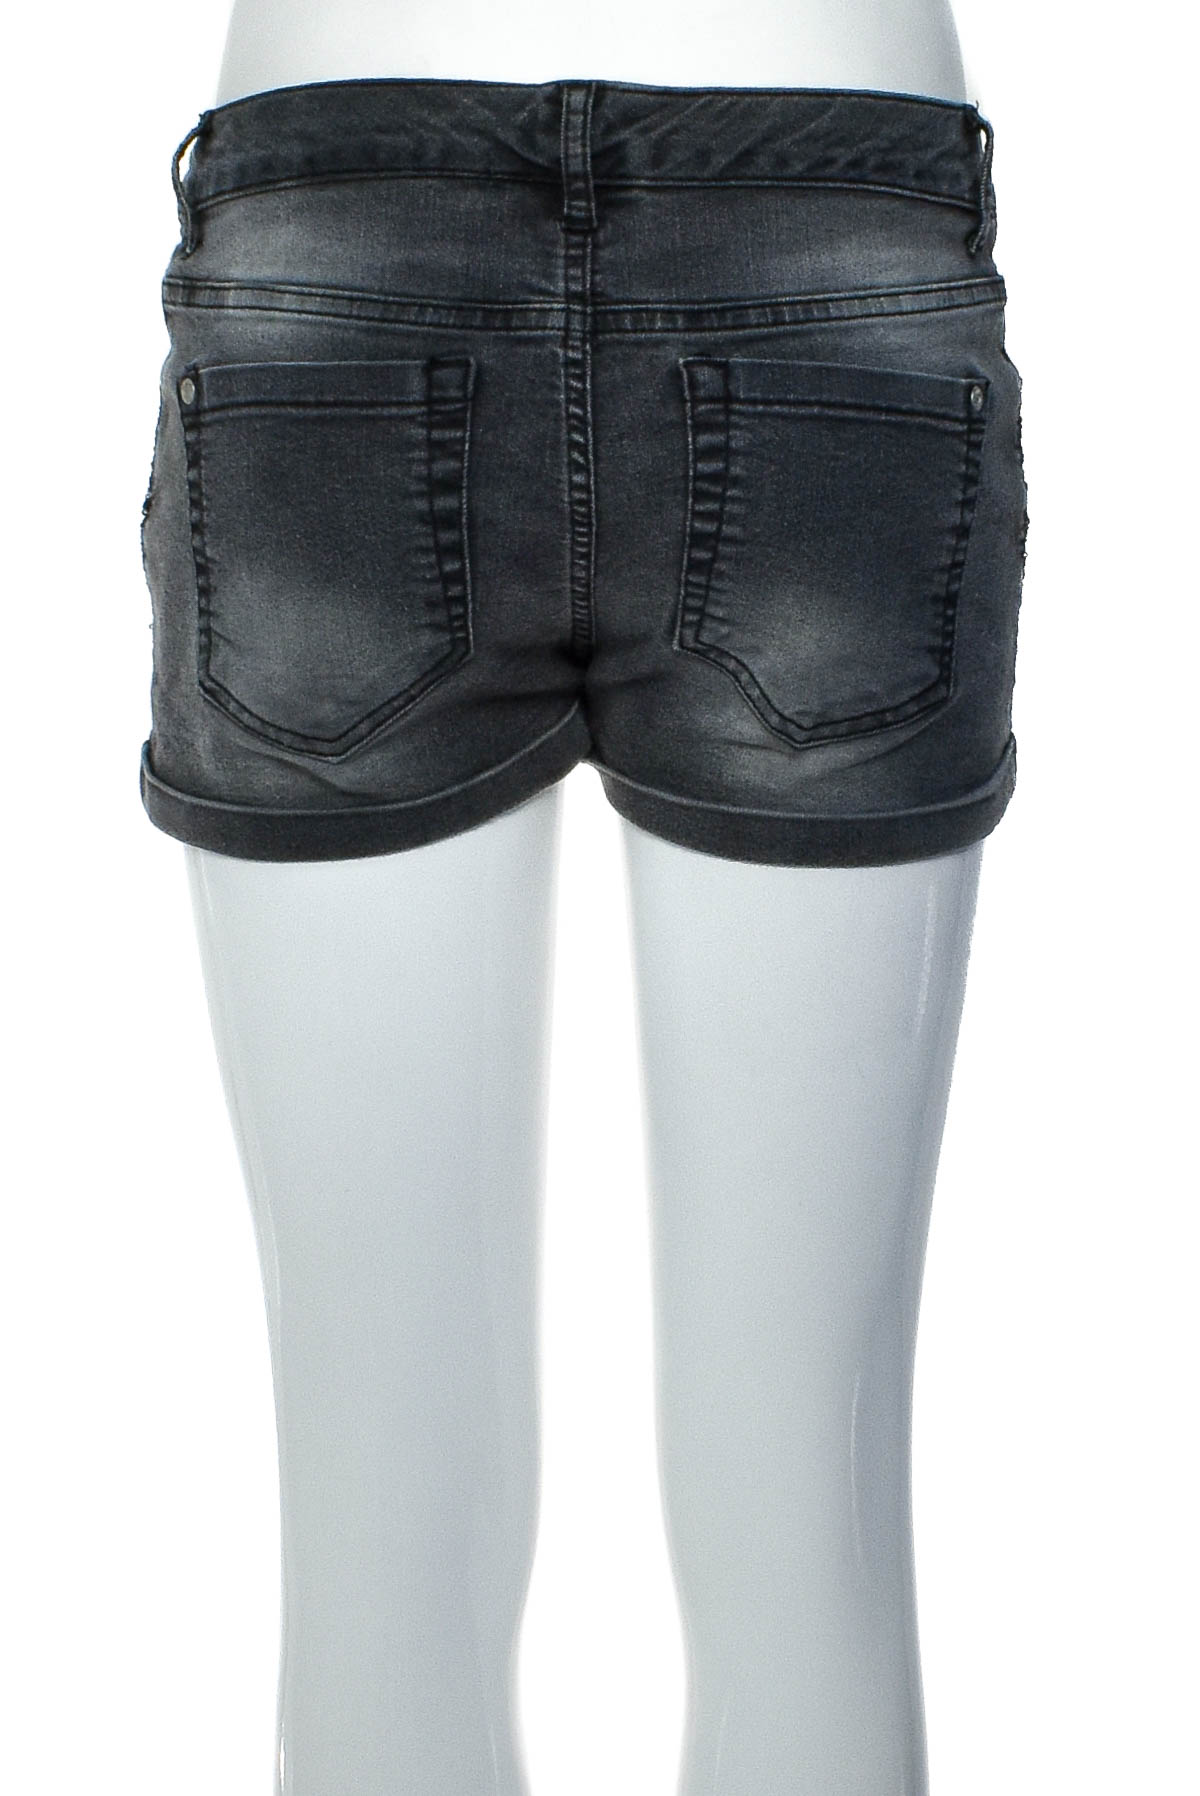 Female shorts - Groggy - 1